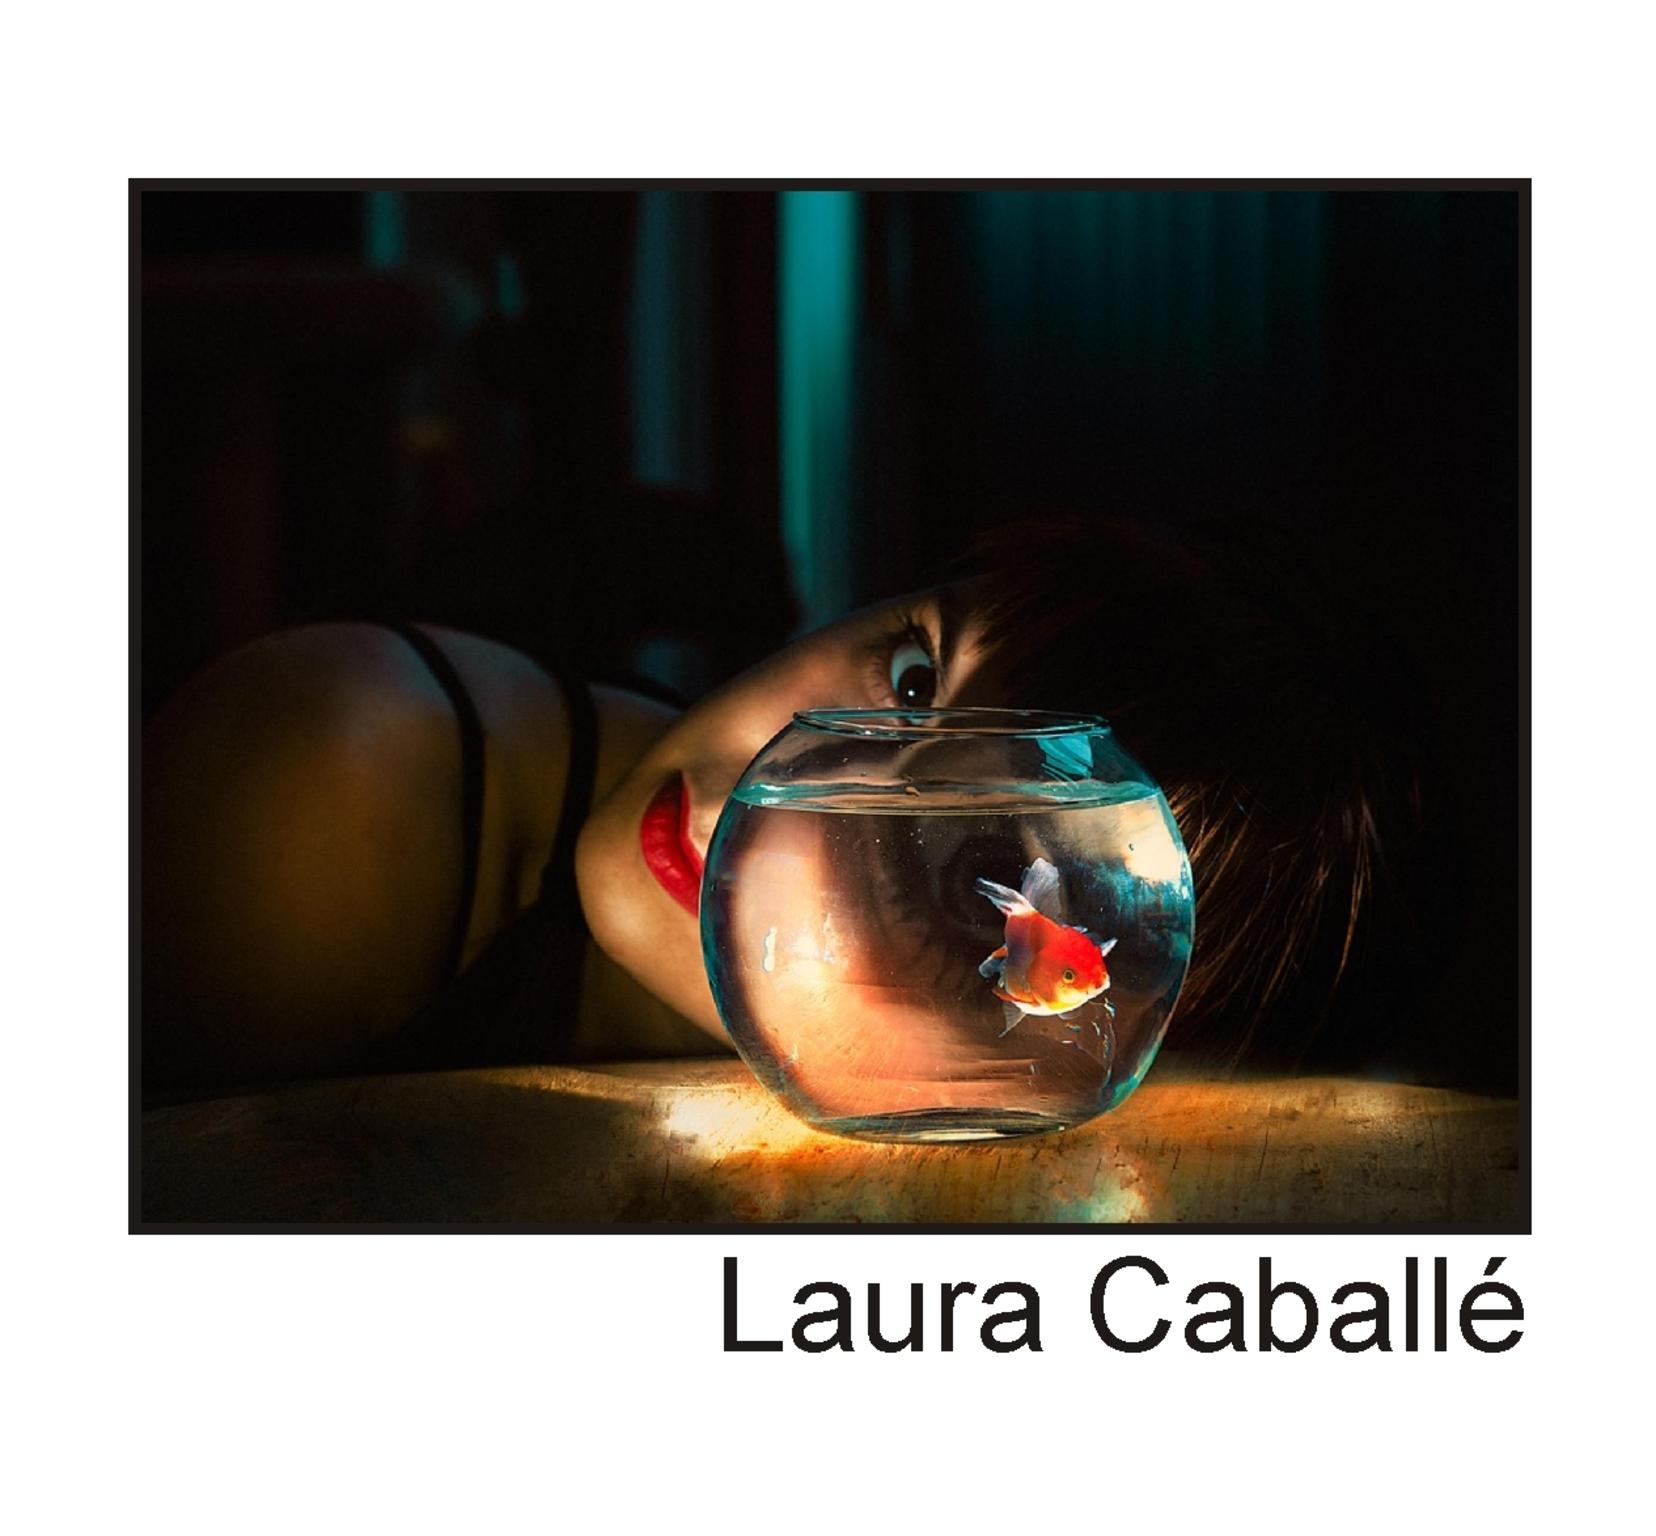  Laura Caball